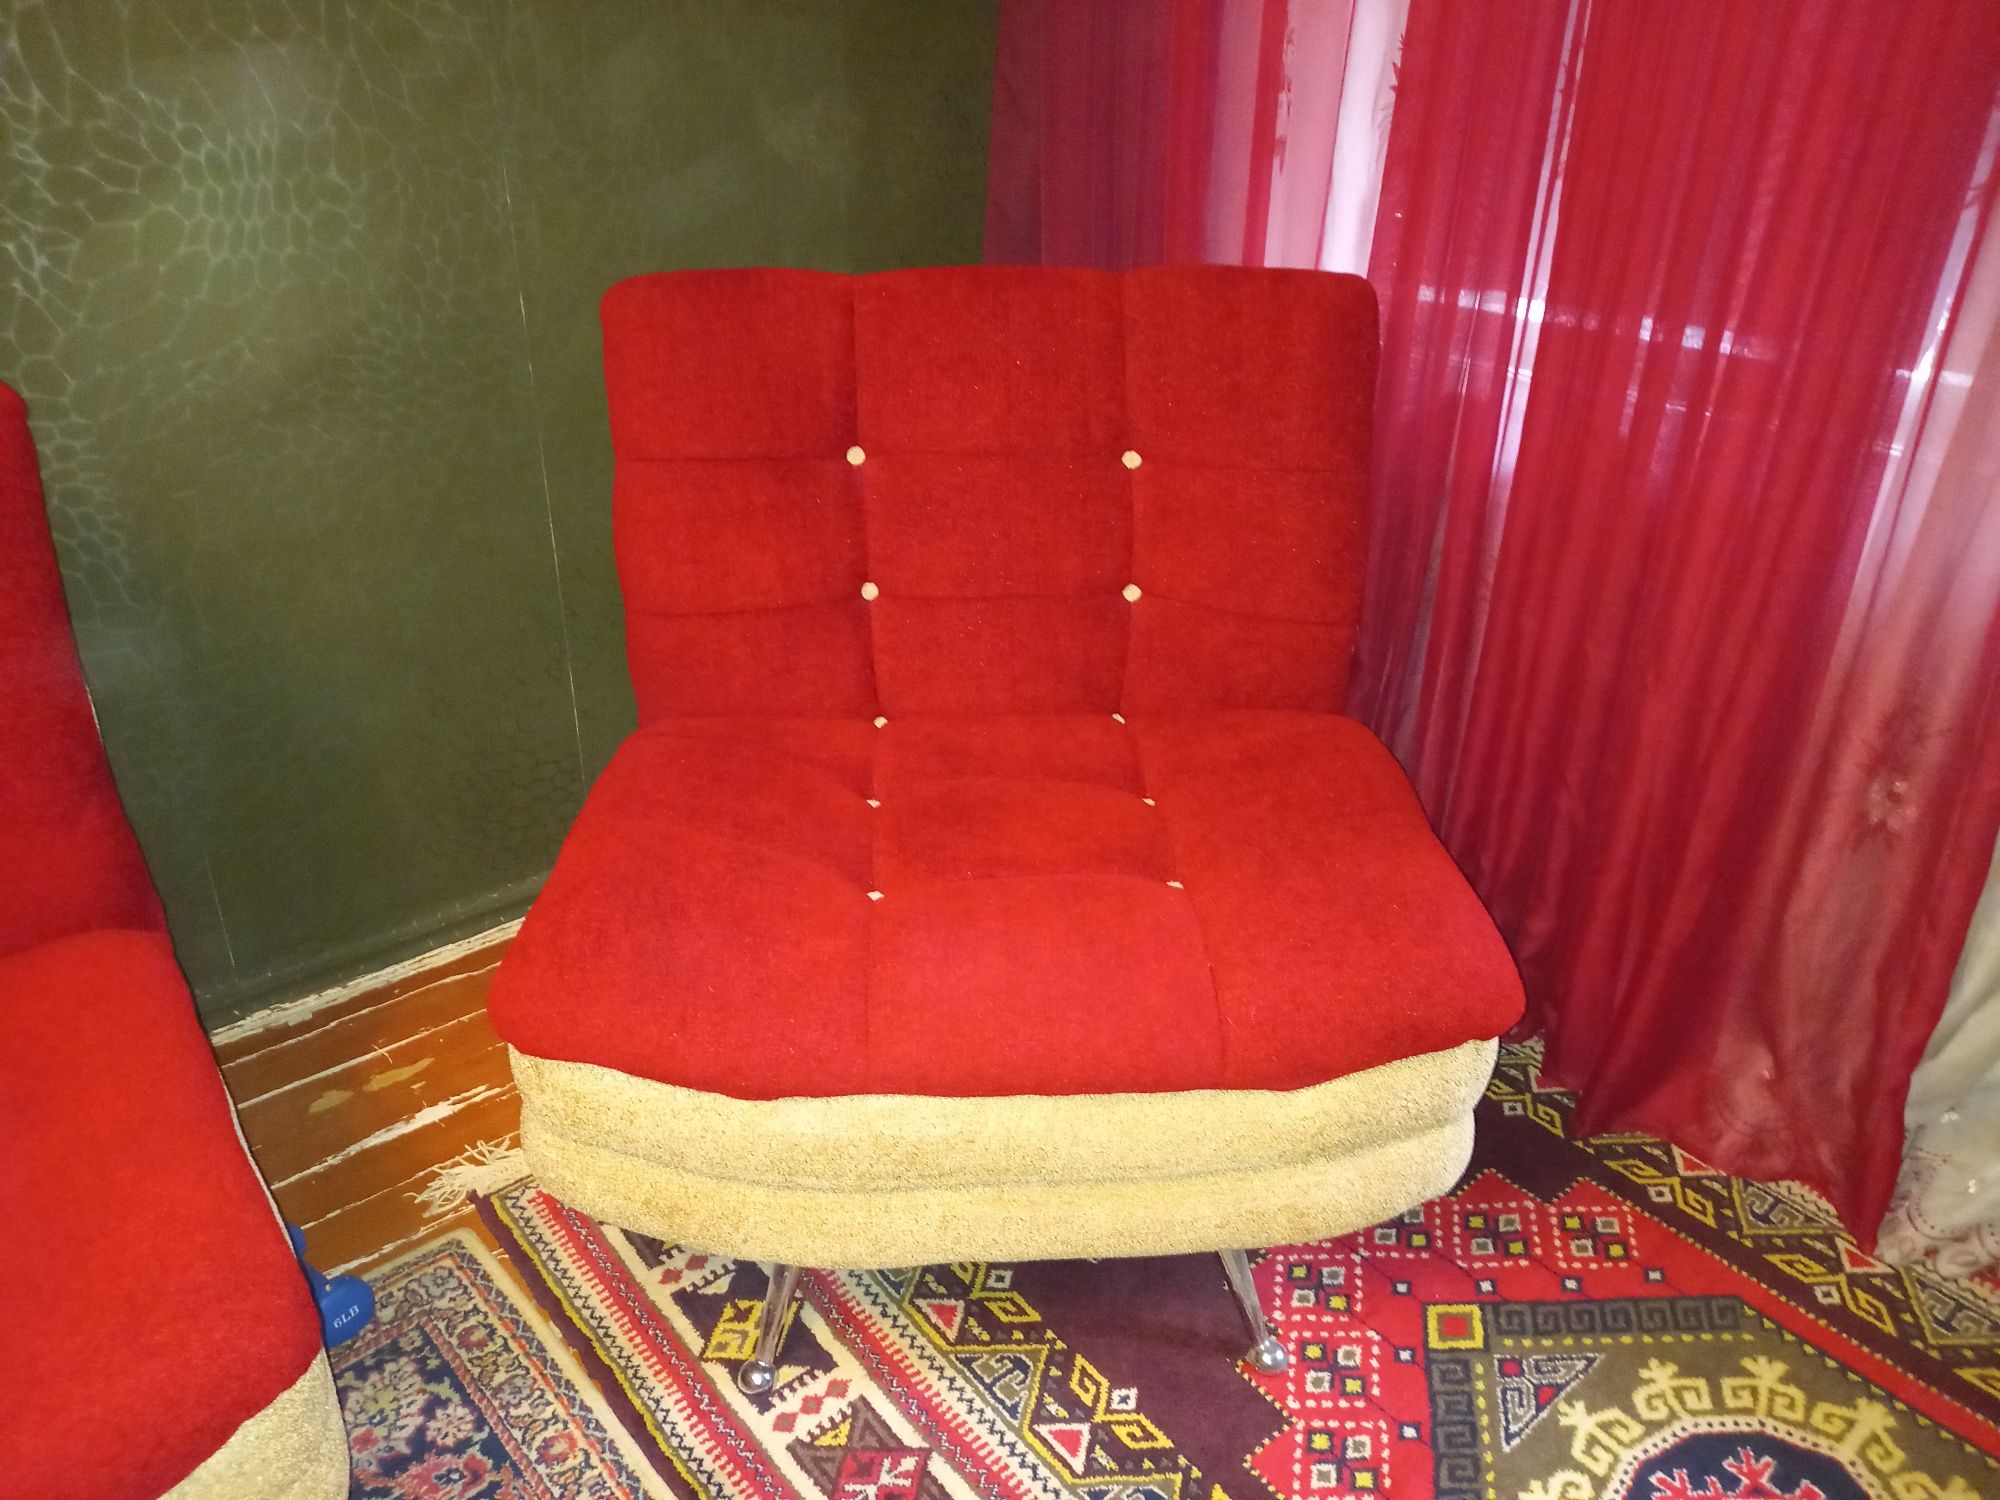 Мягкий уголок, диван и 2 кресла